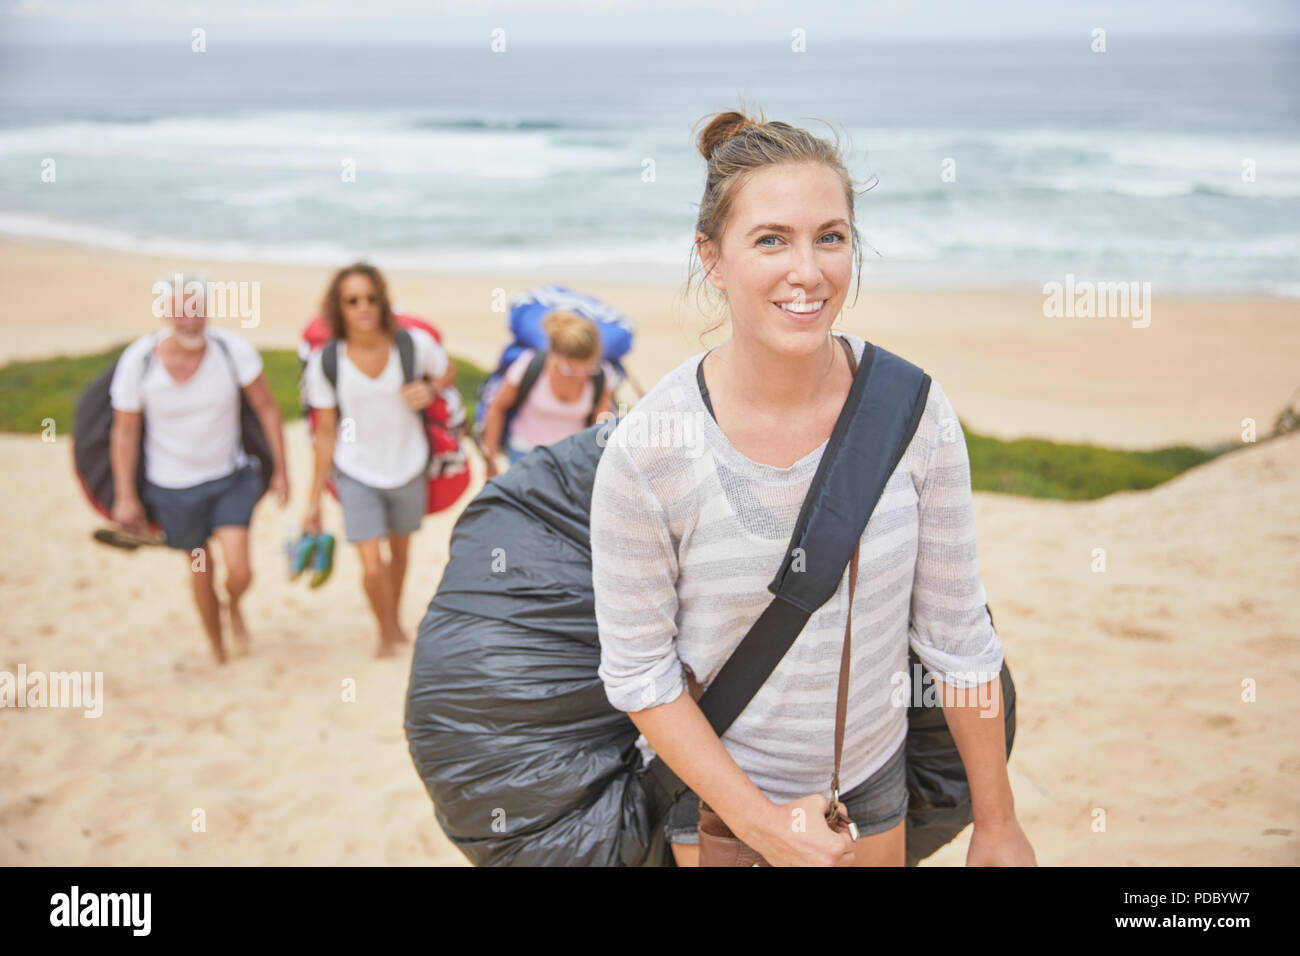 Portrait souriant, confiant femme transportant un sac à dos parachute parapente on beach Banque D'Images